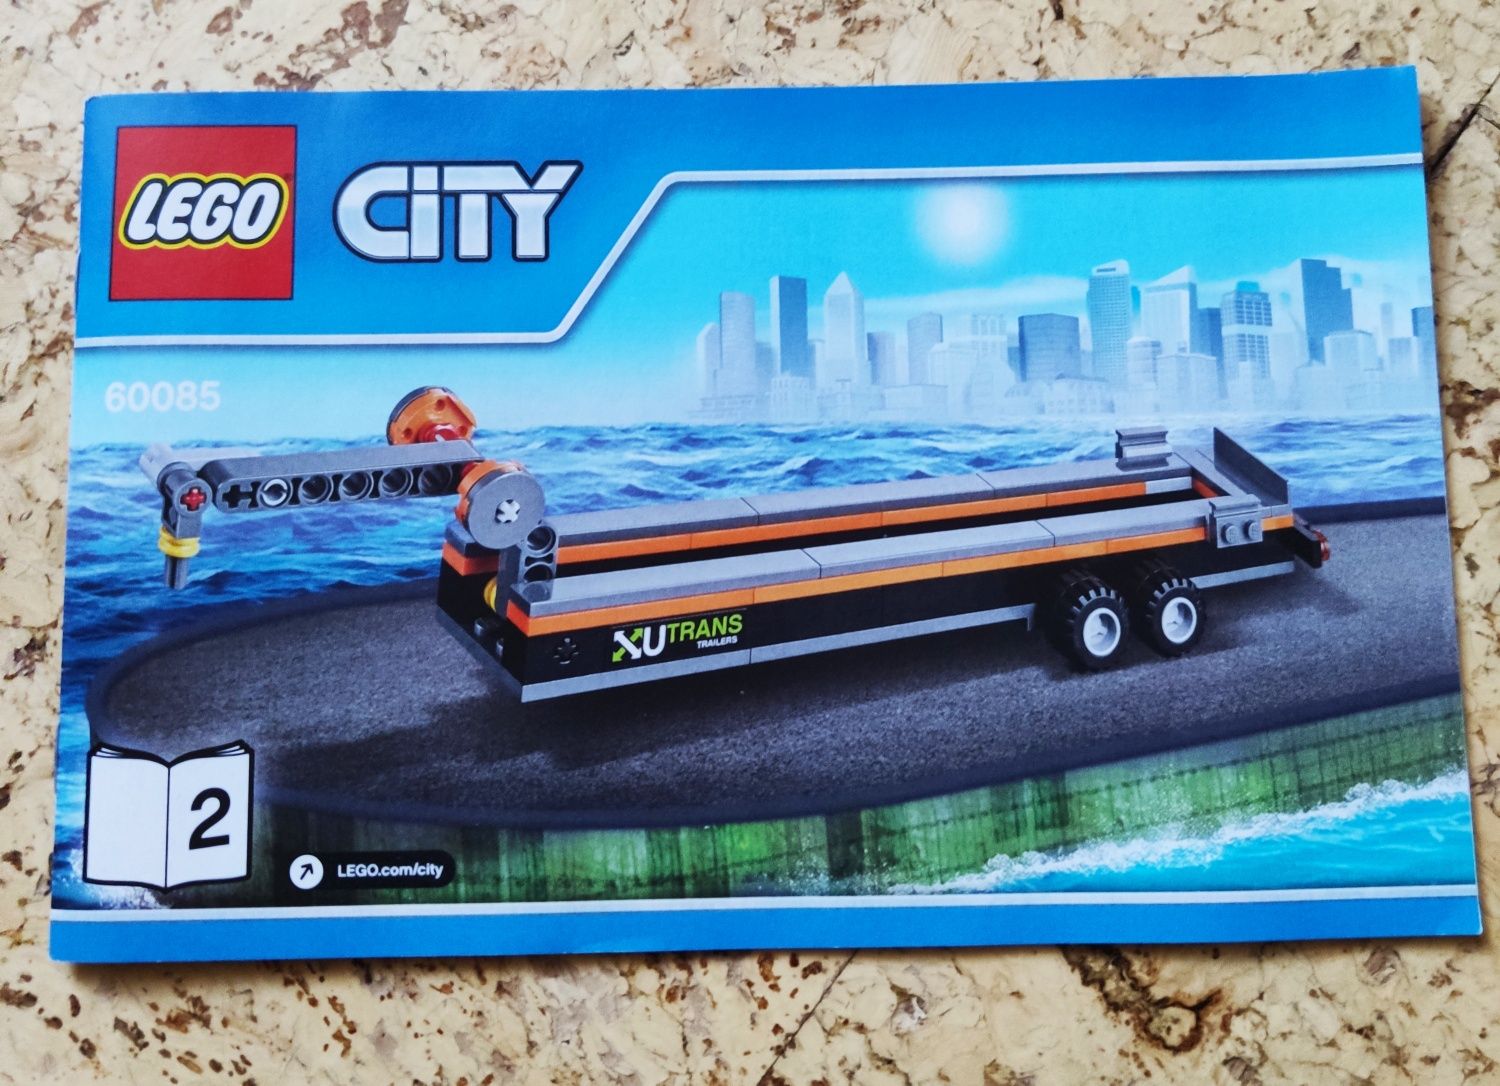 LEGO city 60085